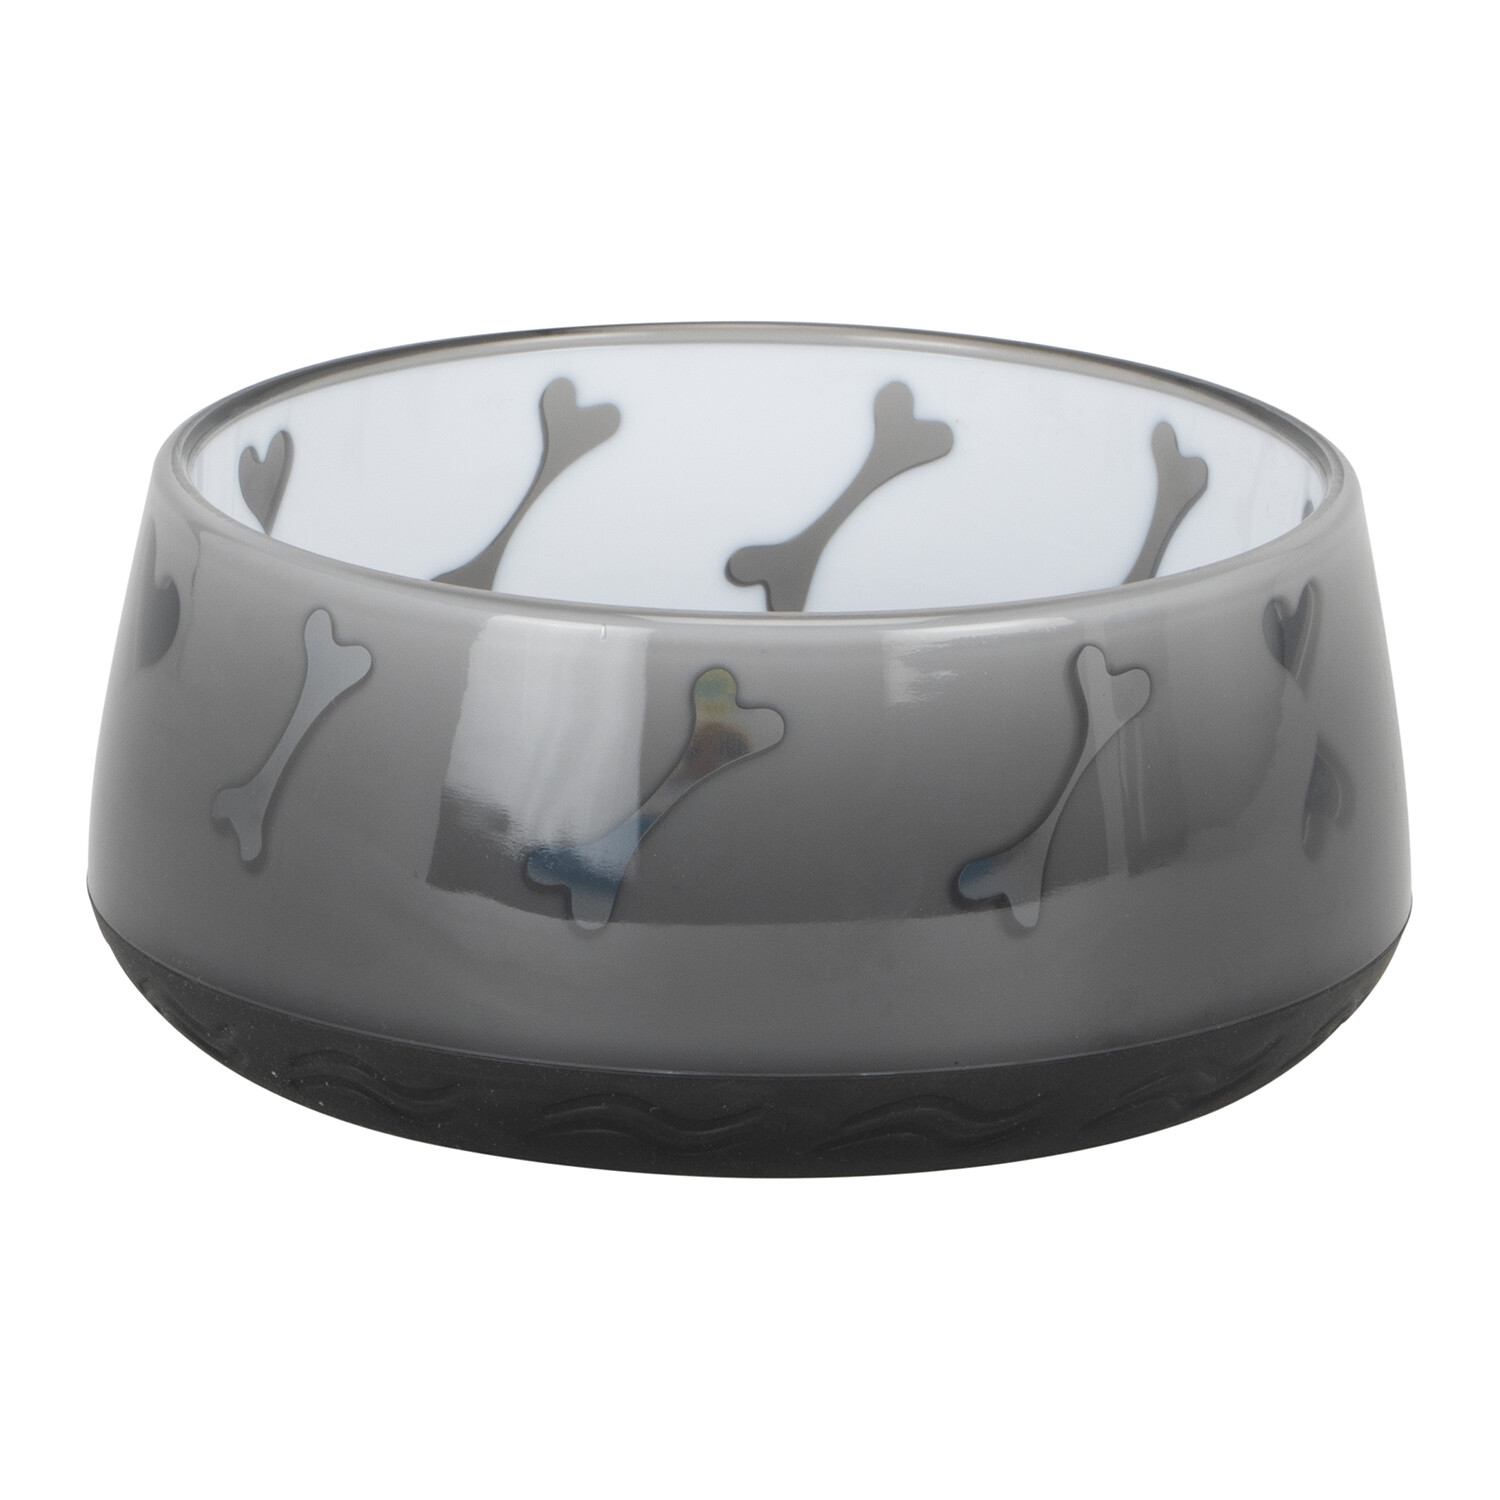 Neon Plastic Pet Bowl - Medium Image